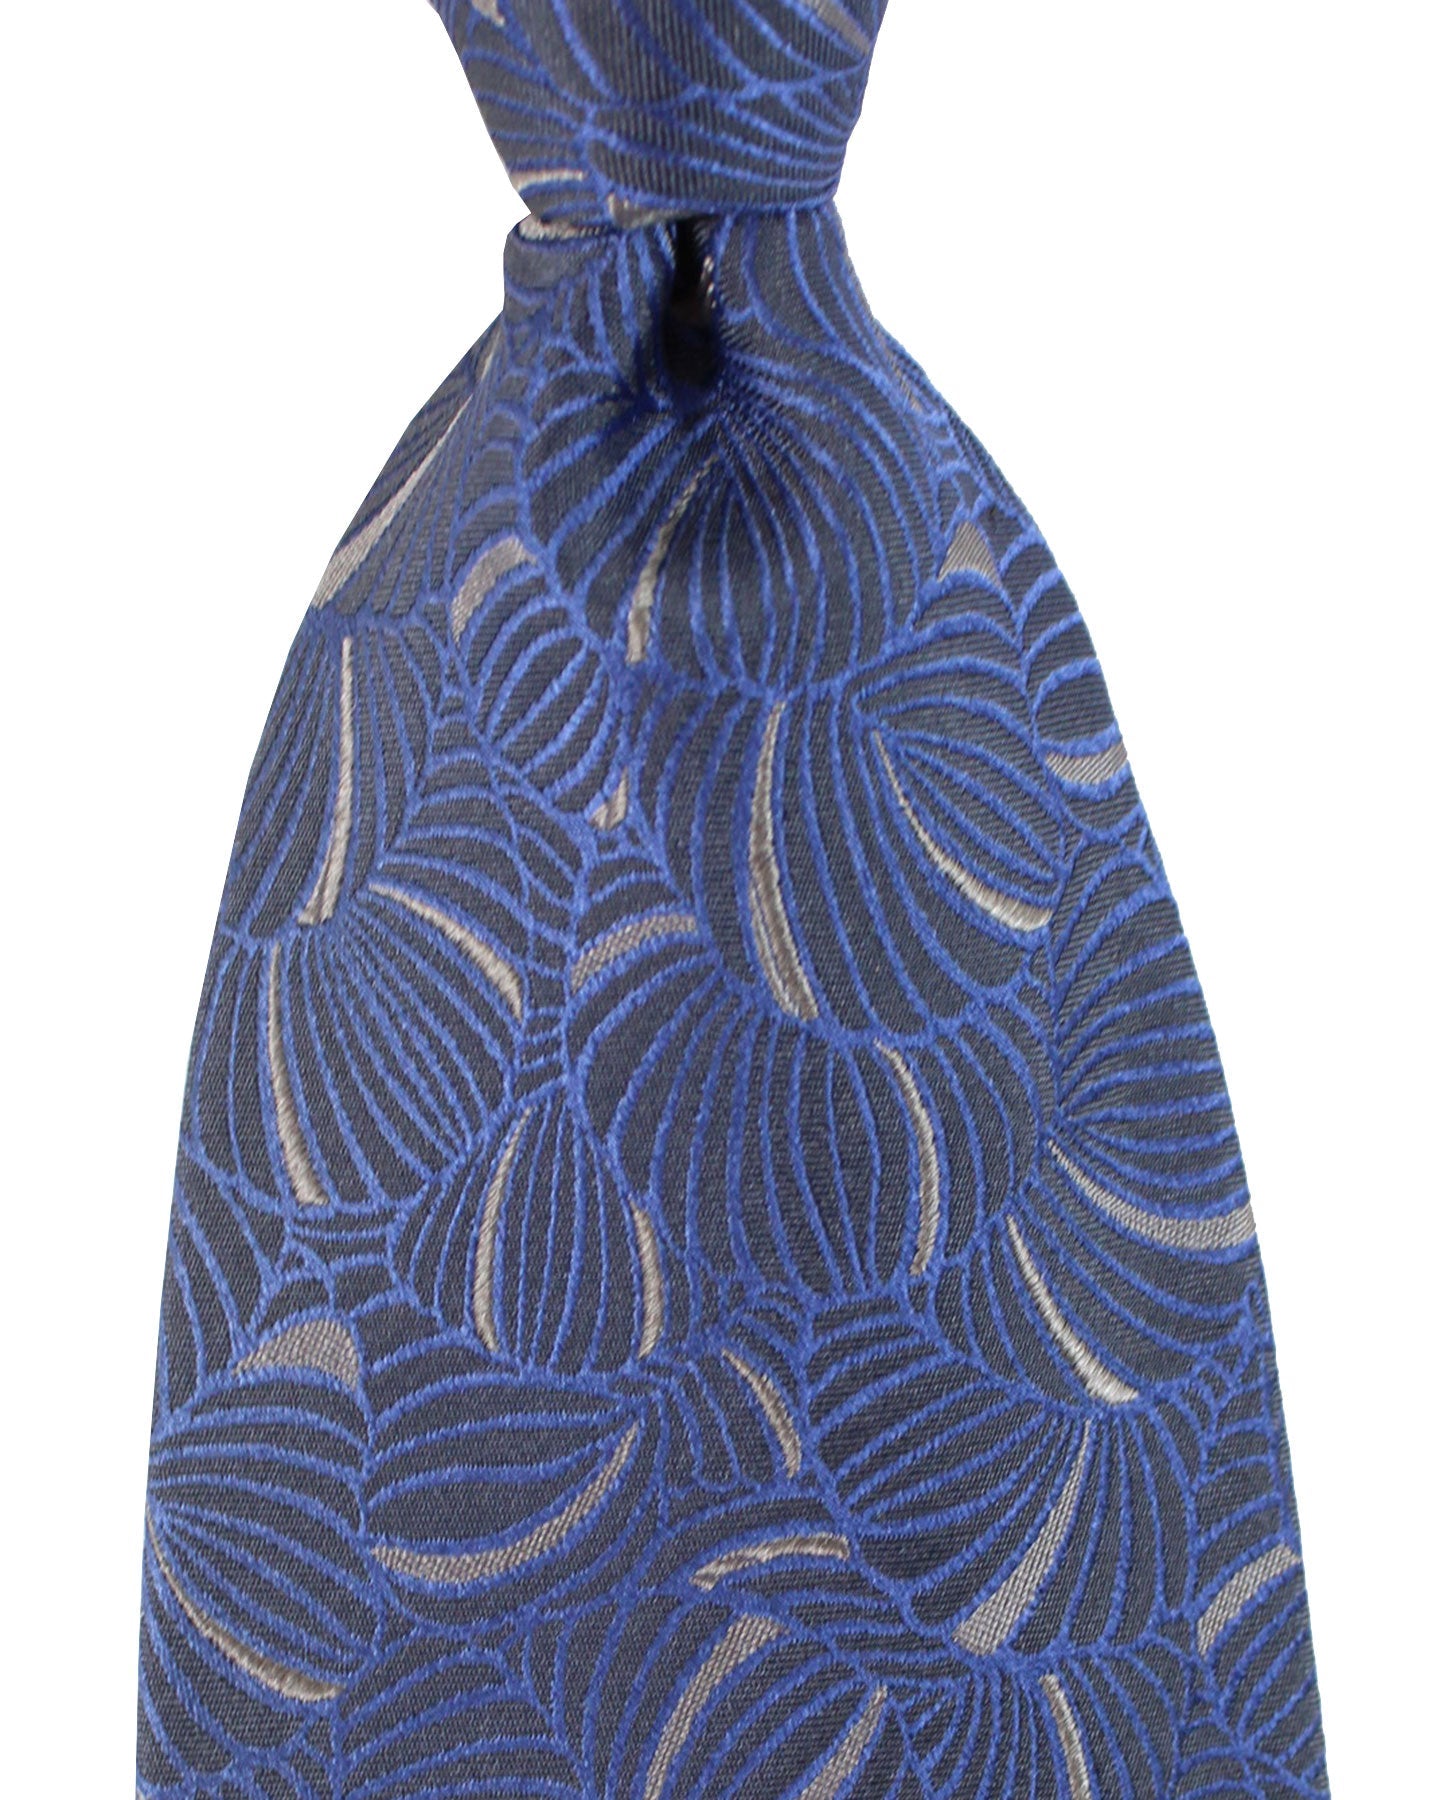 Zilli Silk Tie Midnight Blue Gray Design - Wide Necktie